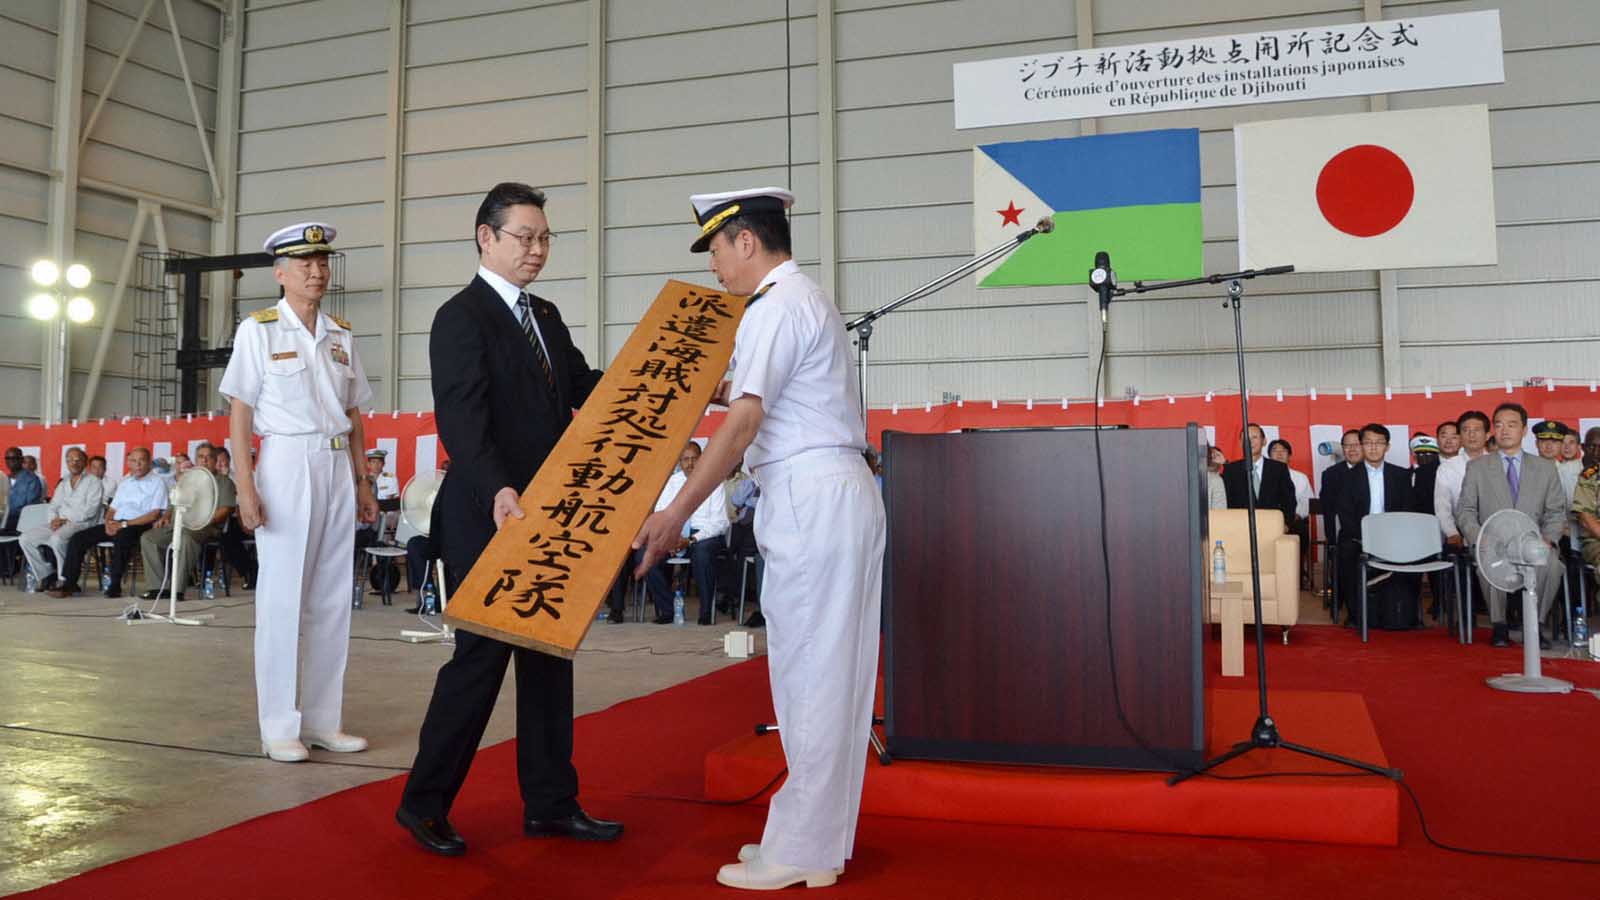 טקס פתיחת מתקנים חדשים בבסיס בג'יבוטי המופעל על-ידי כוחות ההגנה הימיים של צבא יפן. 7 ביולי 2011 (Photo by Kyodo News via Getty Images IL)